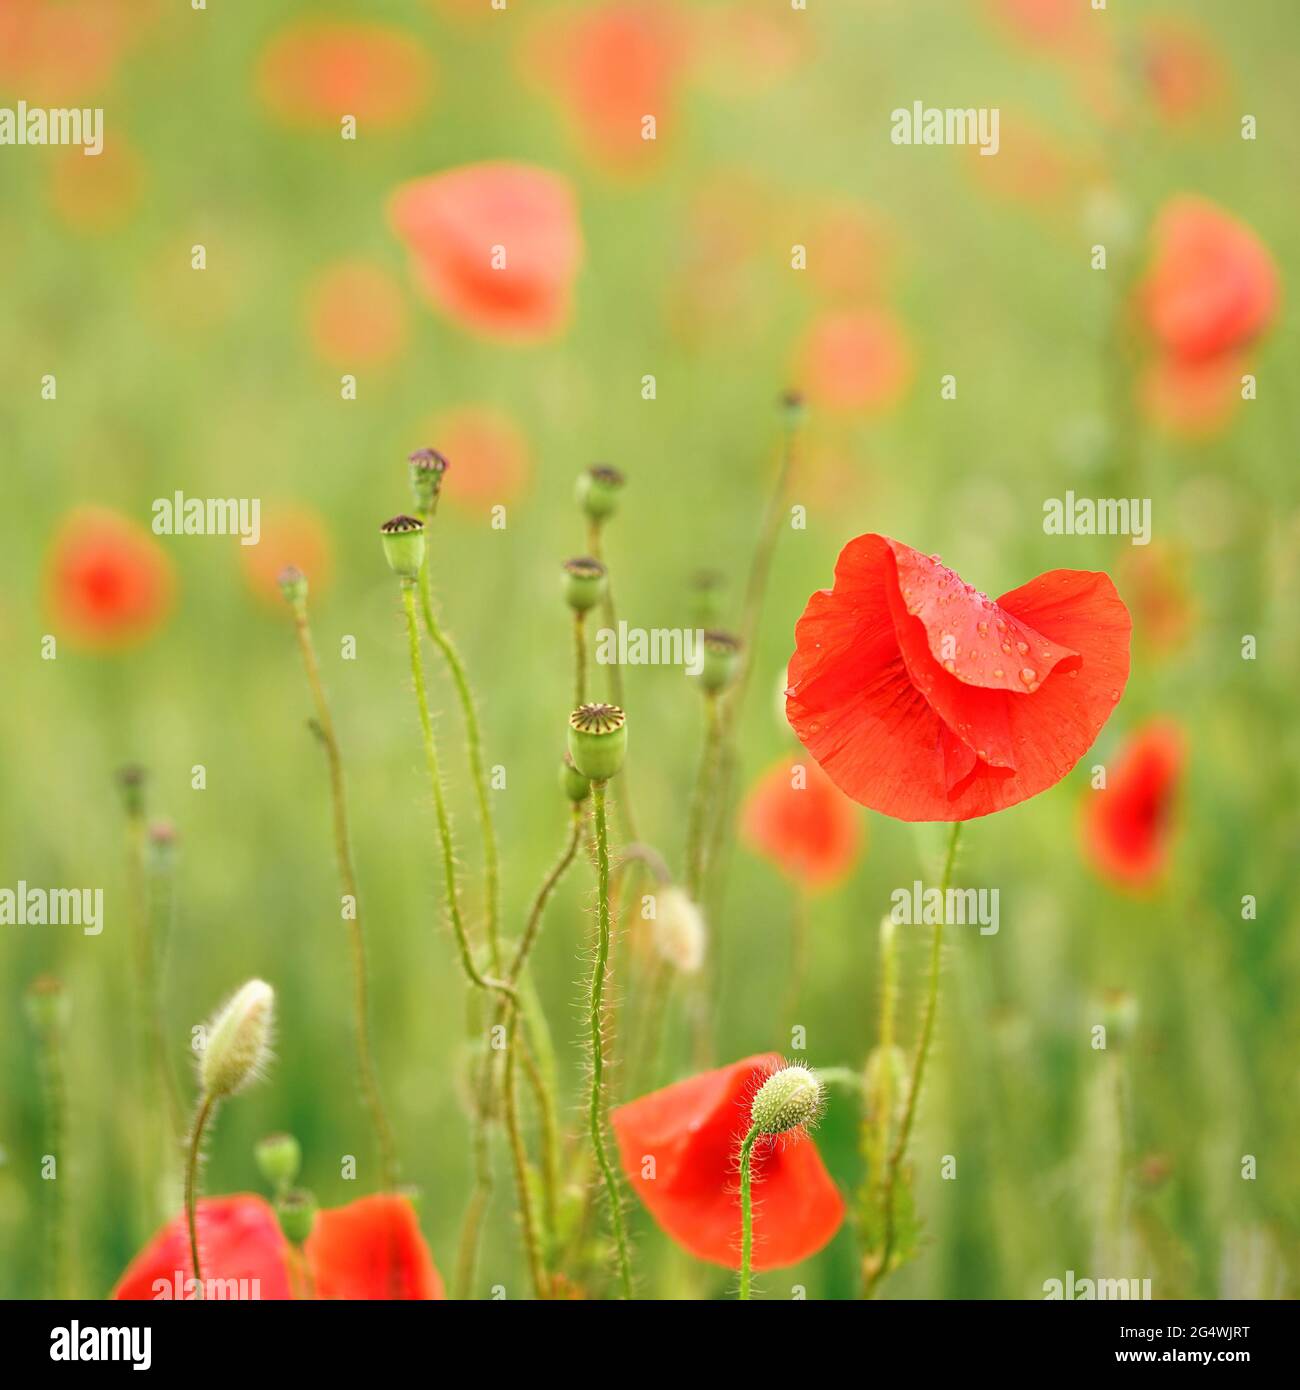 Fiori di papavero selvatico rosso brillante, petali bagnati dalla pioggia, crescere in campo verde, dettaglio closeup Foto Stock